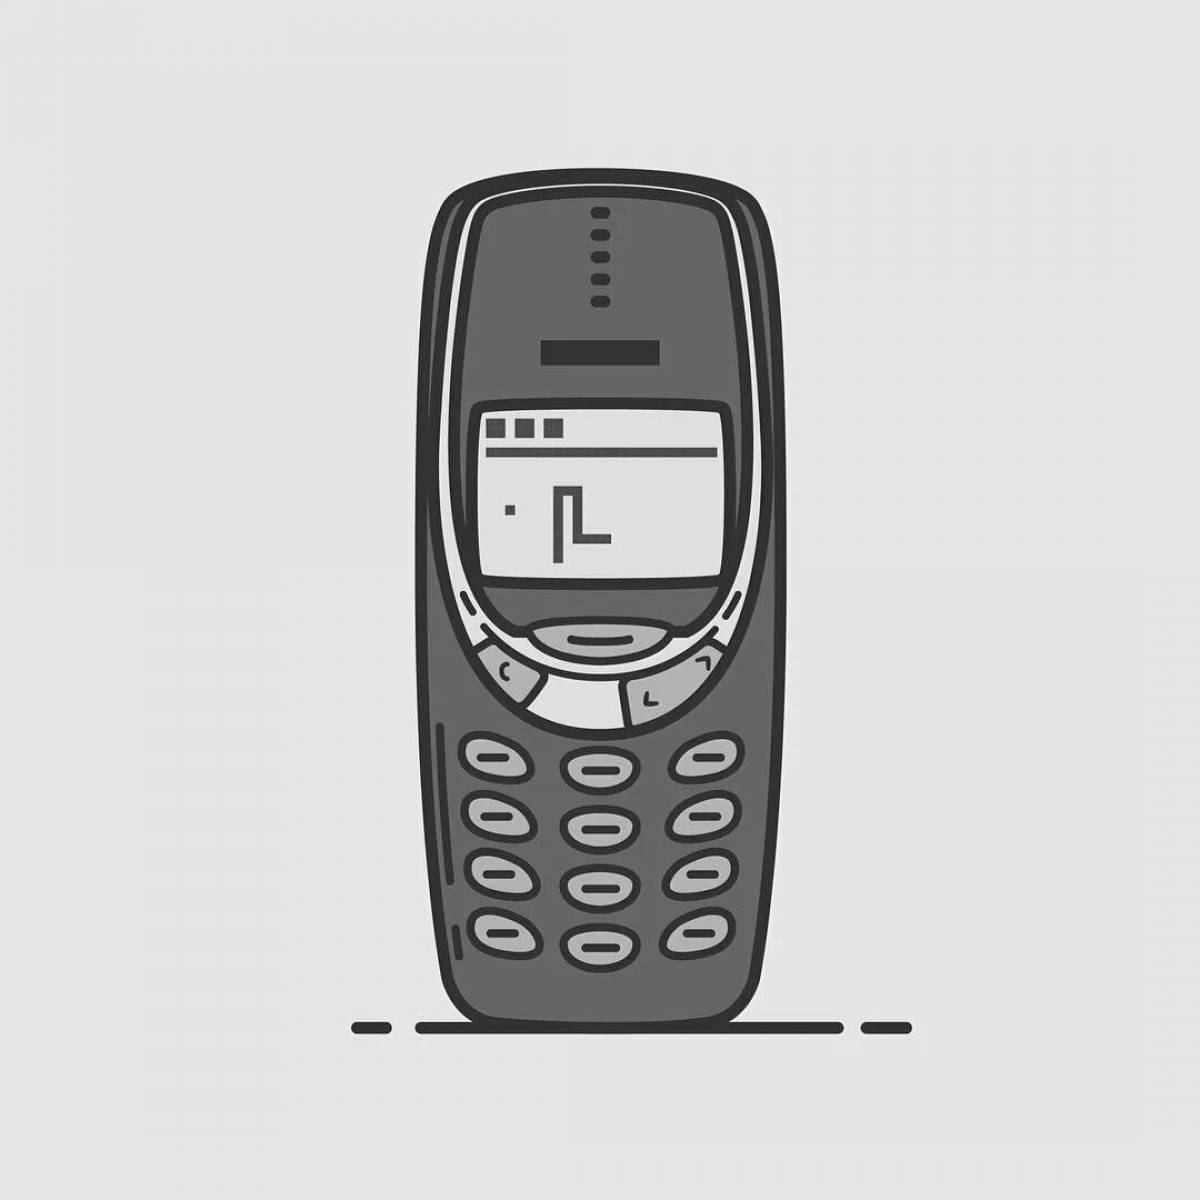 33 10. Nokia 3310 Black. Phone Nokia 3310. Nokia 3310 черный. Nokia 3310 Classic.